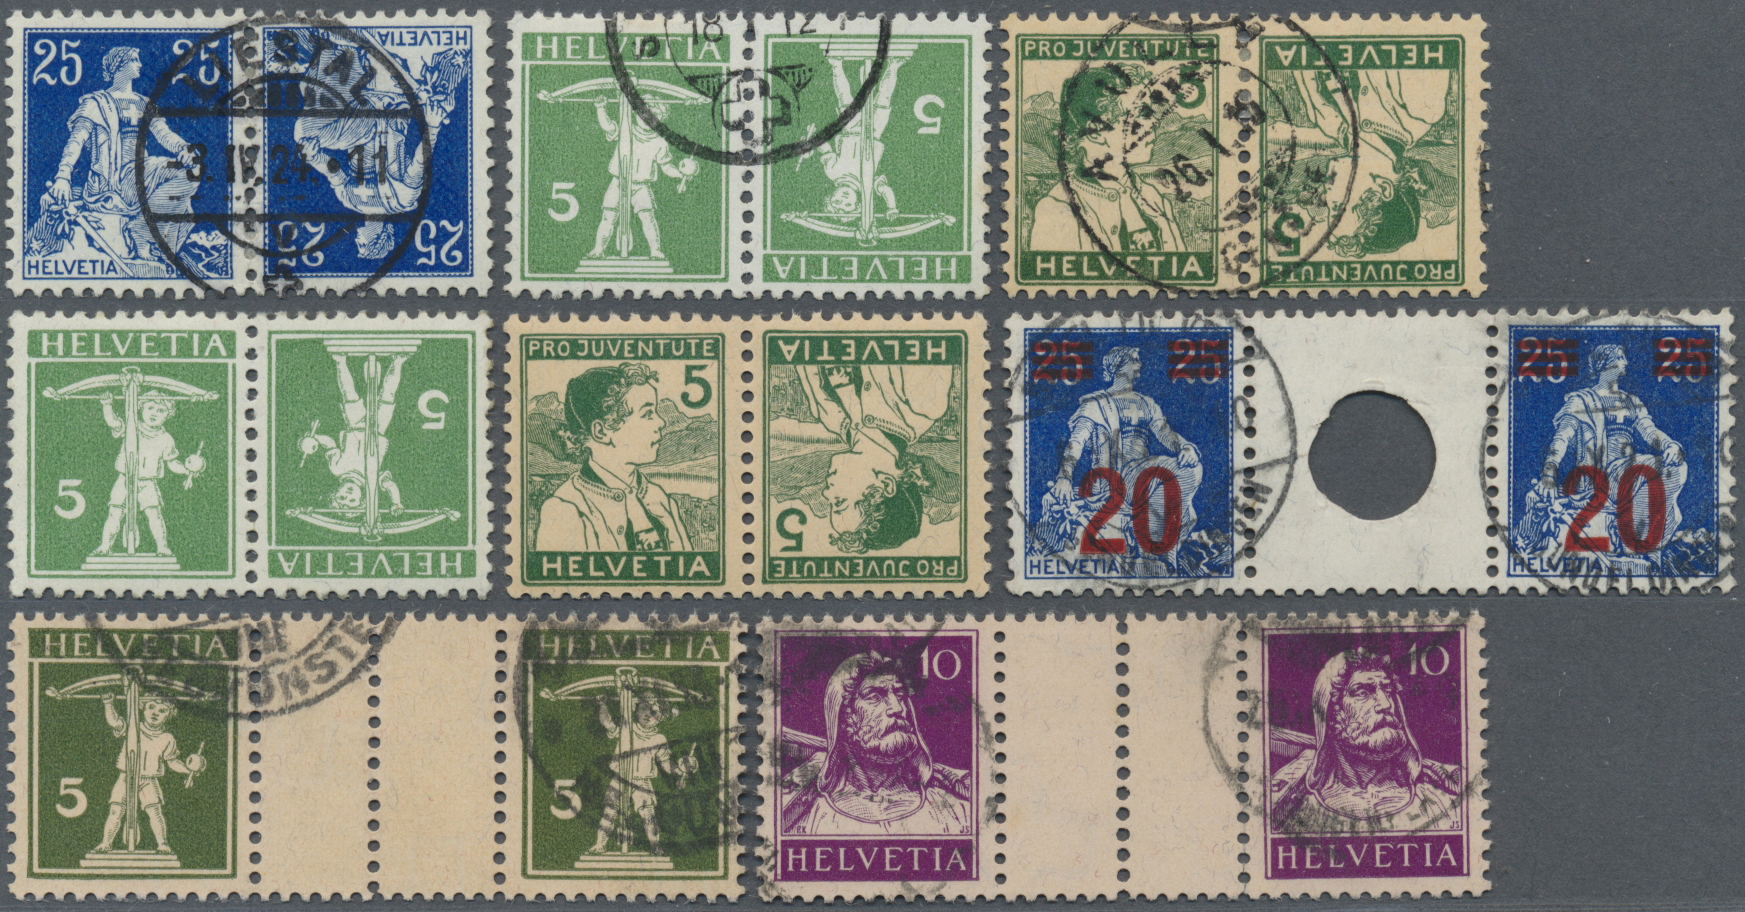 Stamp Auction - Schweiz - Zusammendrucke - Auction #40 Europe, lot 28135